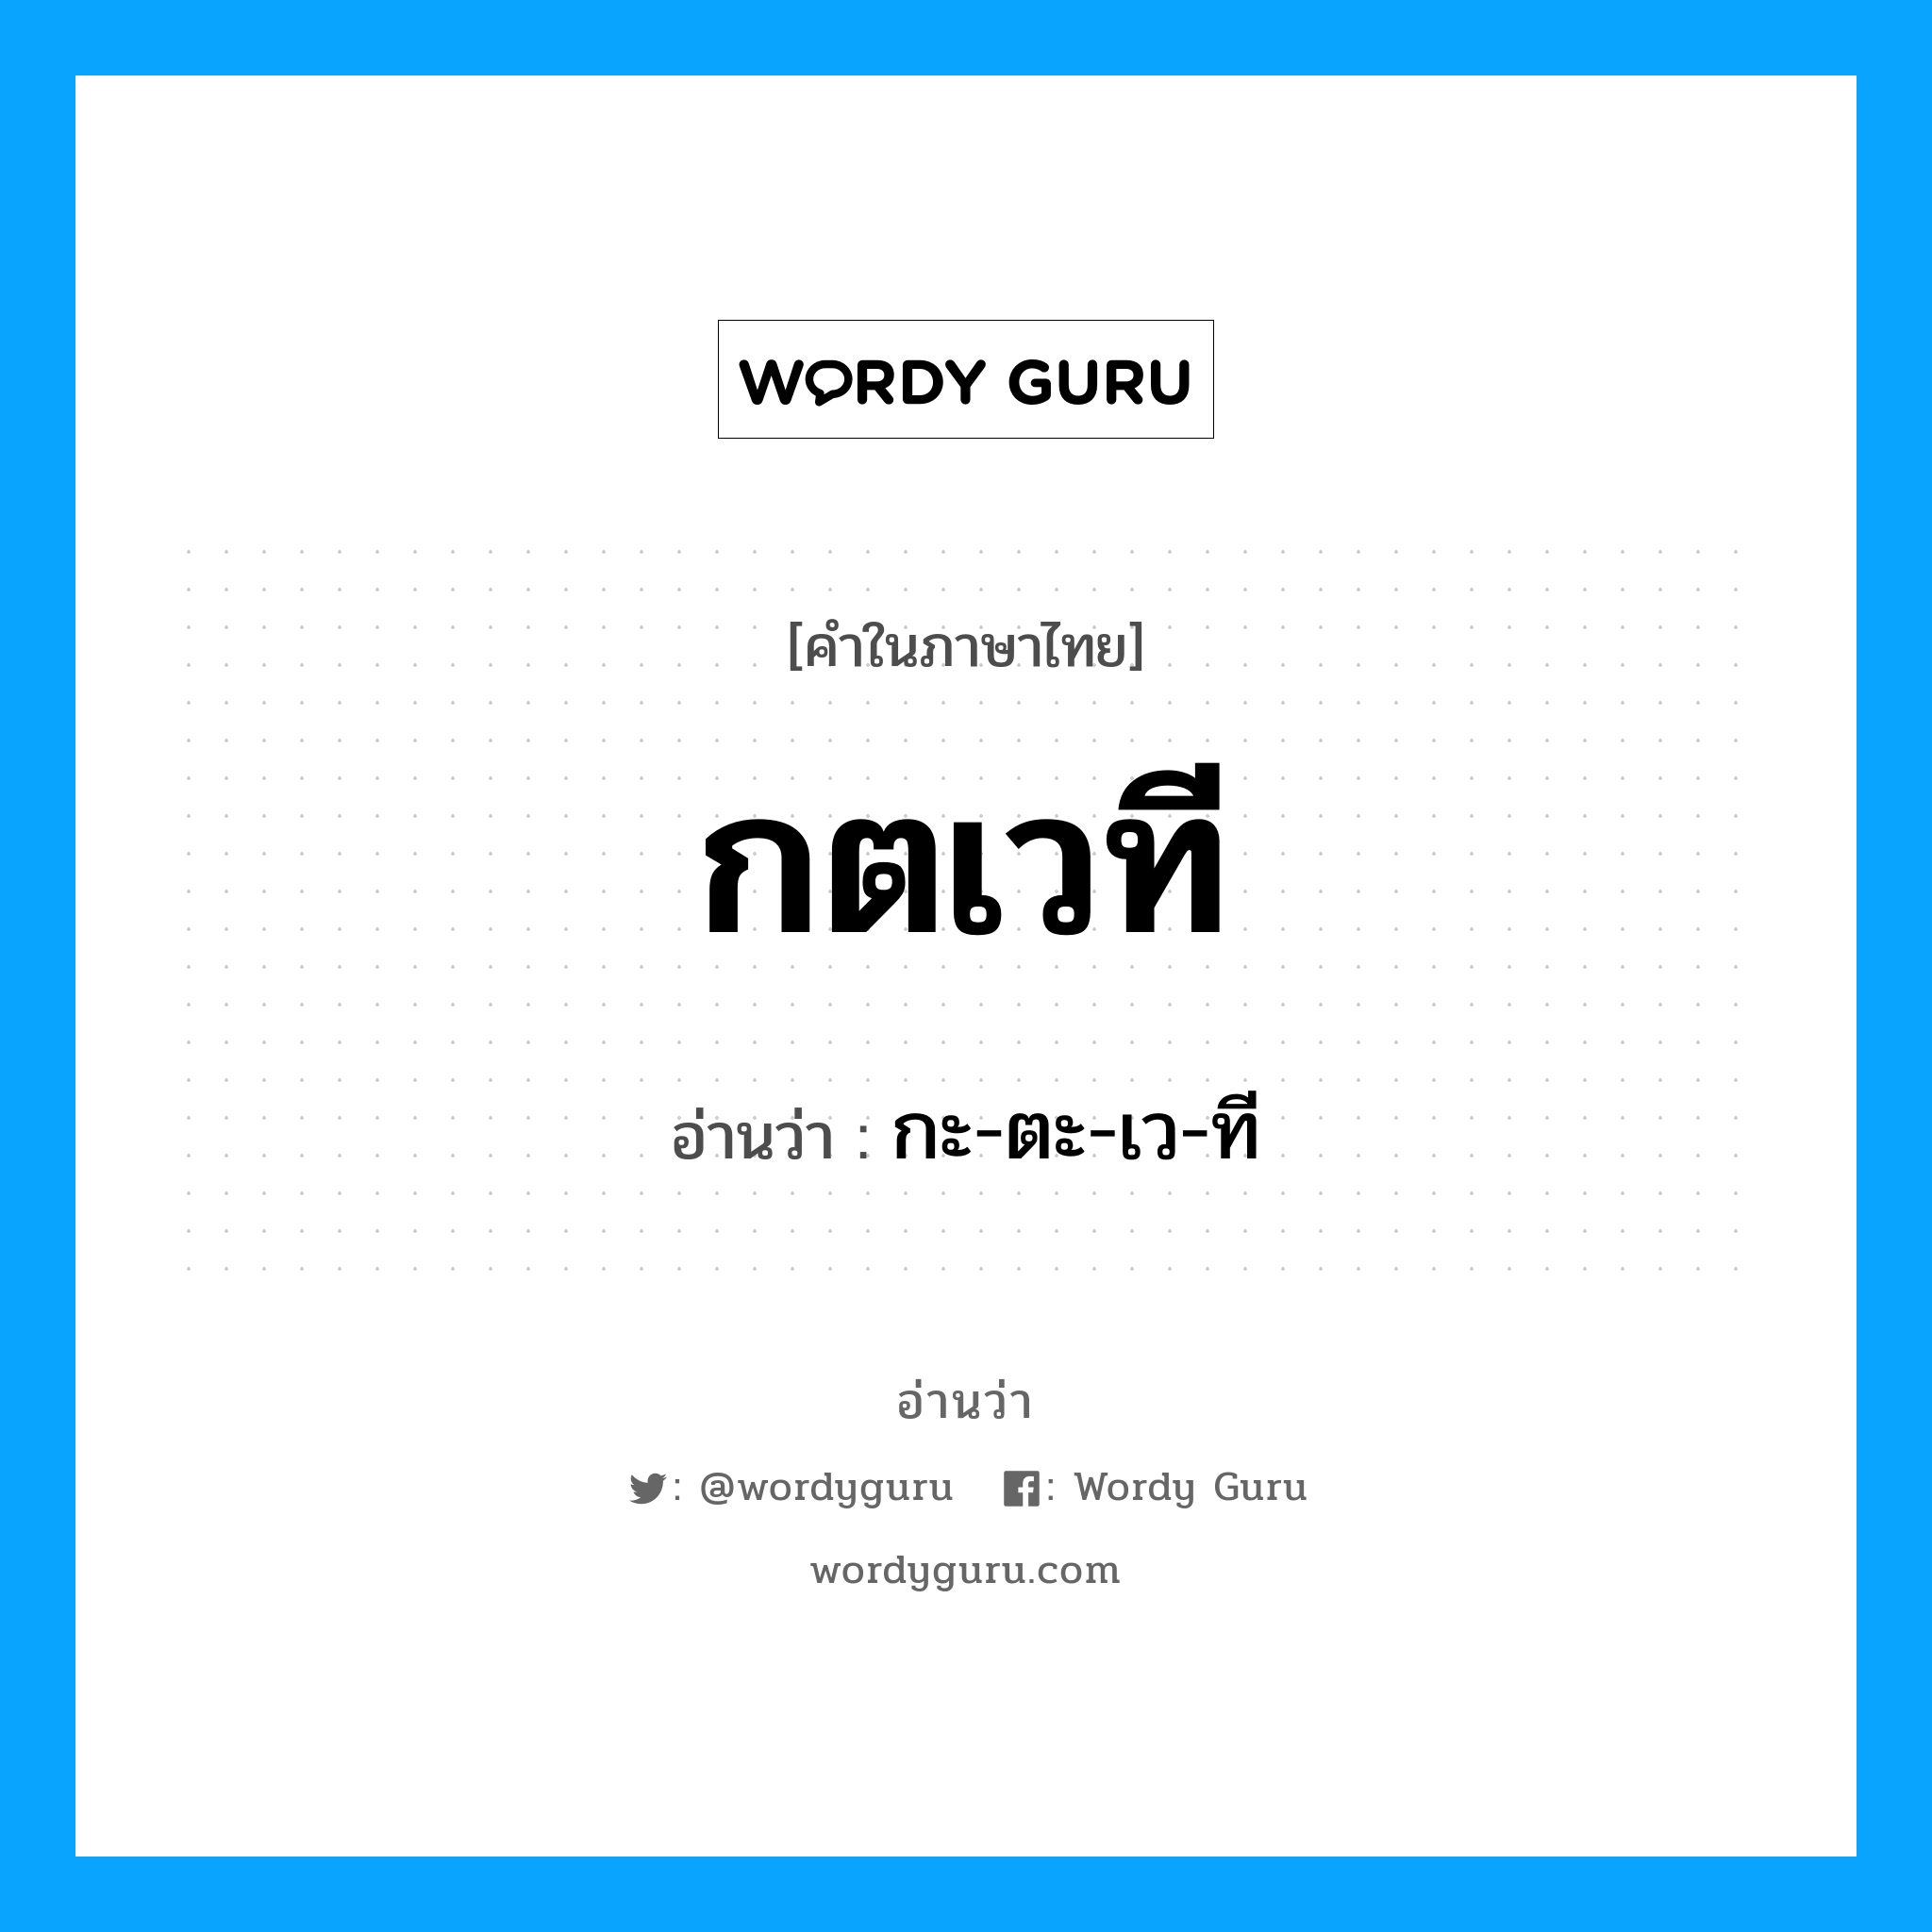 กะ-ตะ-เว-ที เป็นคำอ่านของคำไหน?, คำในภาษาไทย กะ-ตะ-เว-ที อ่านว่า กตเวที